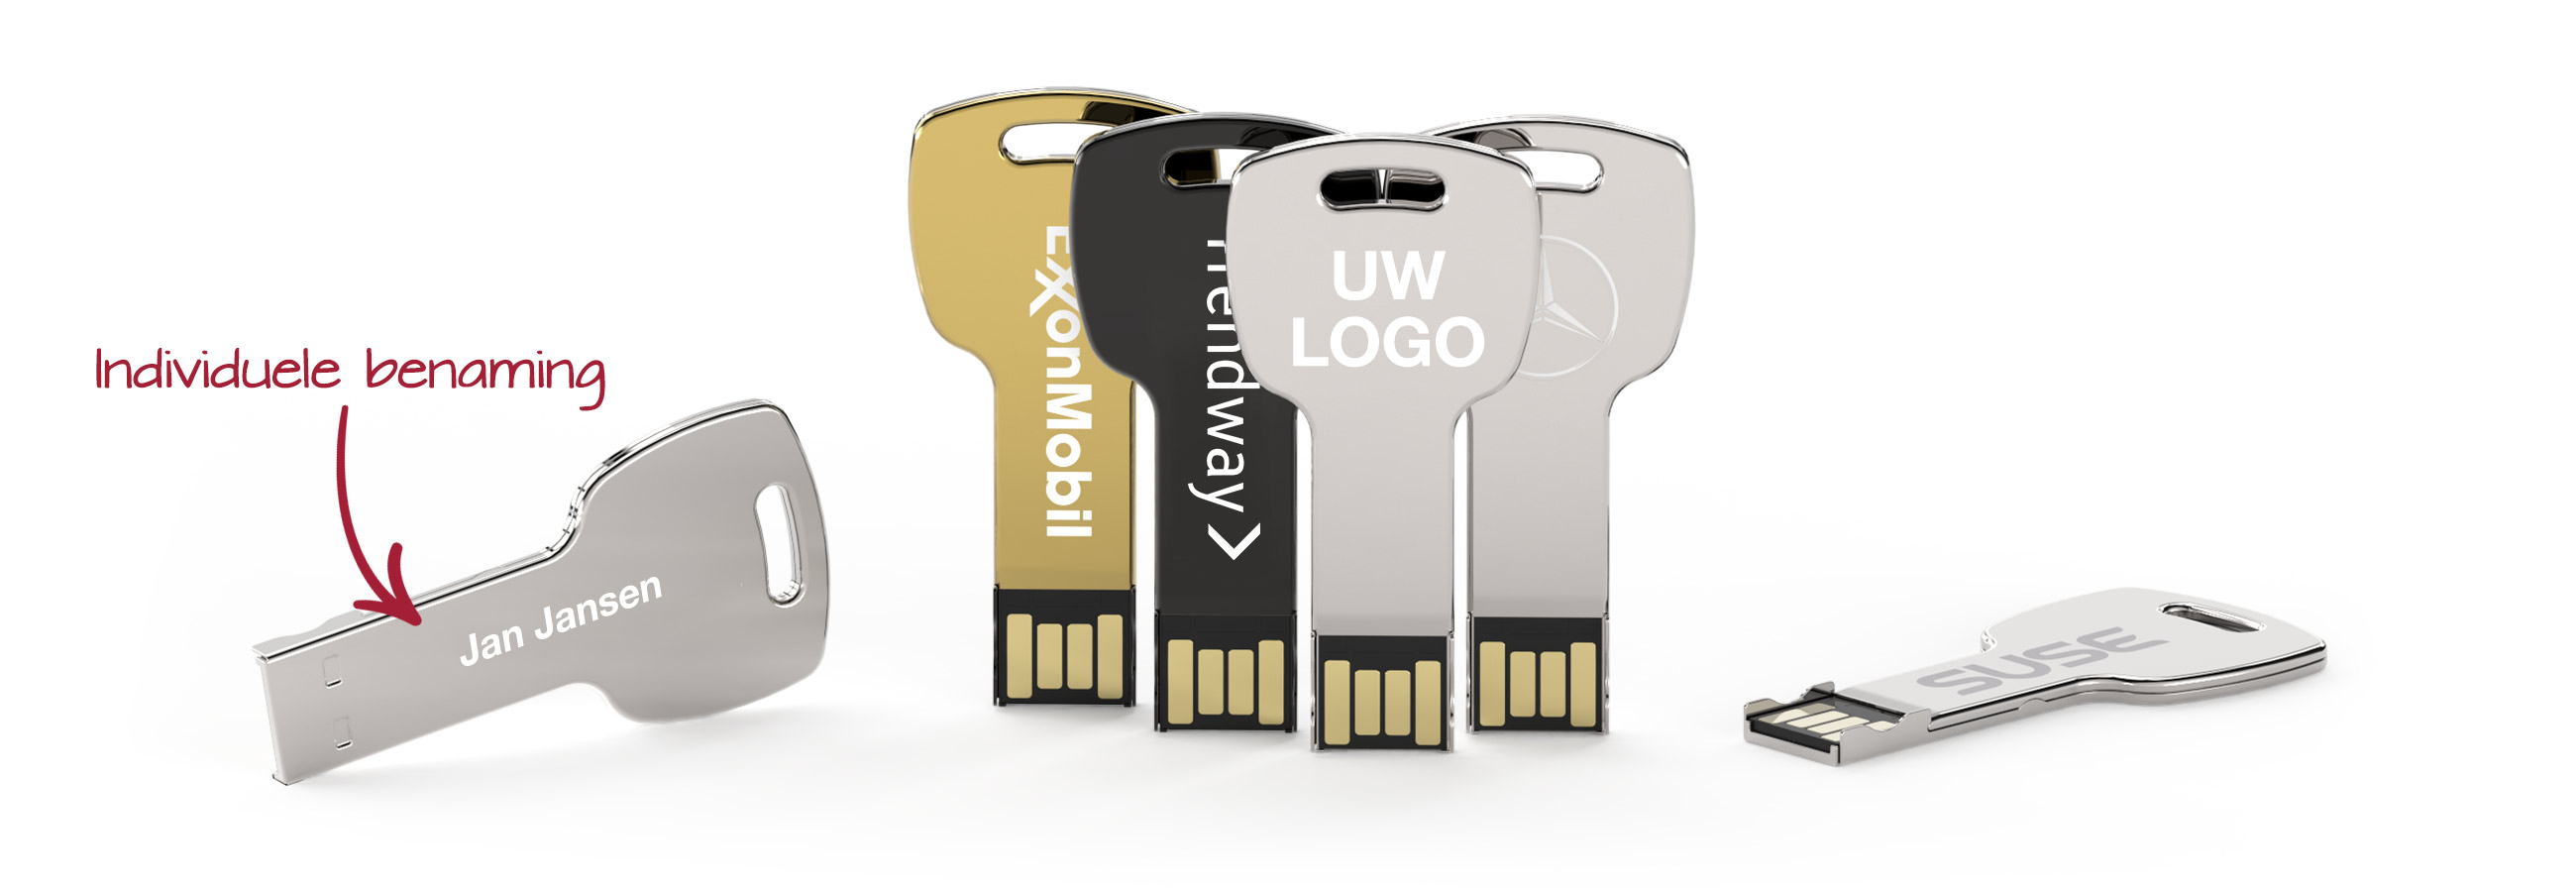 Key USB stick